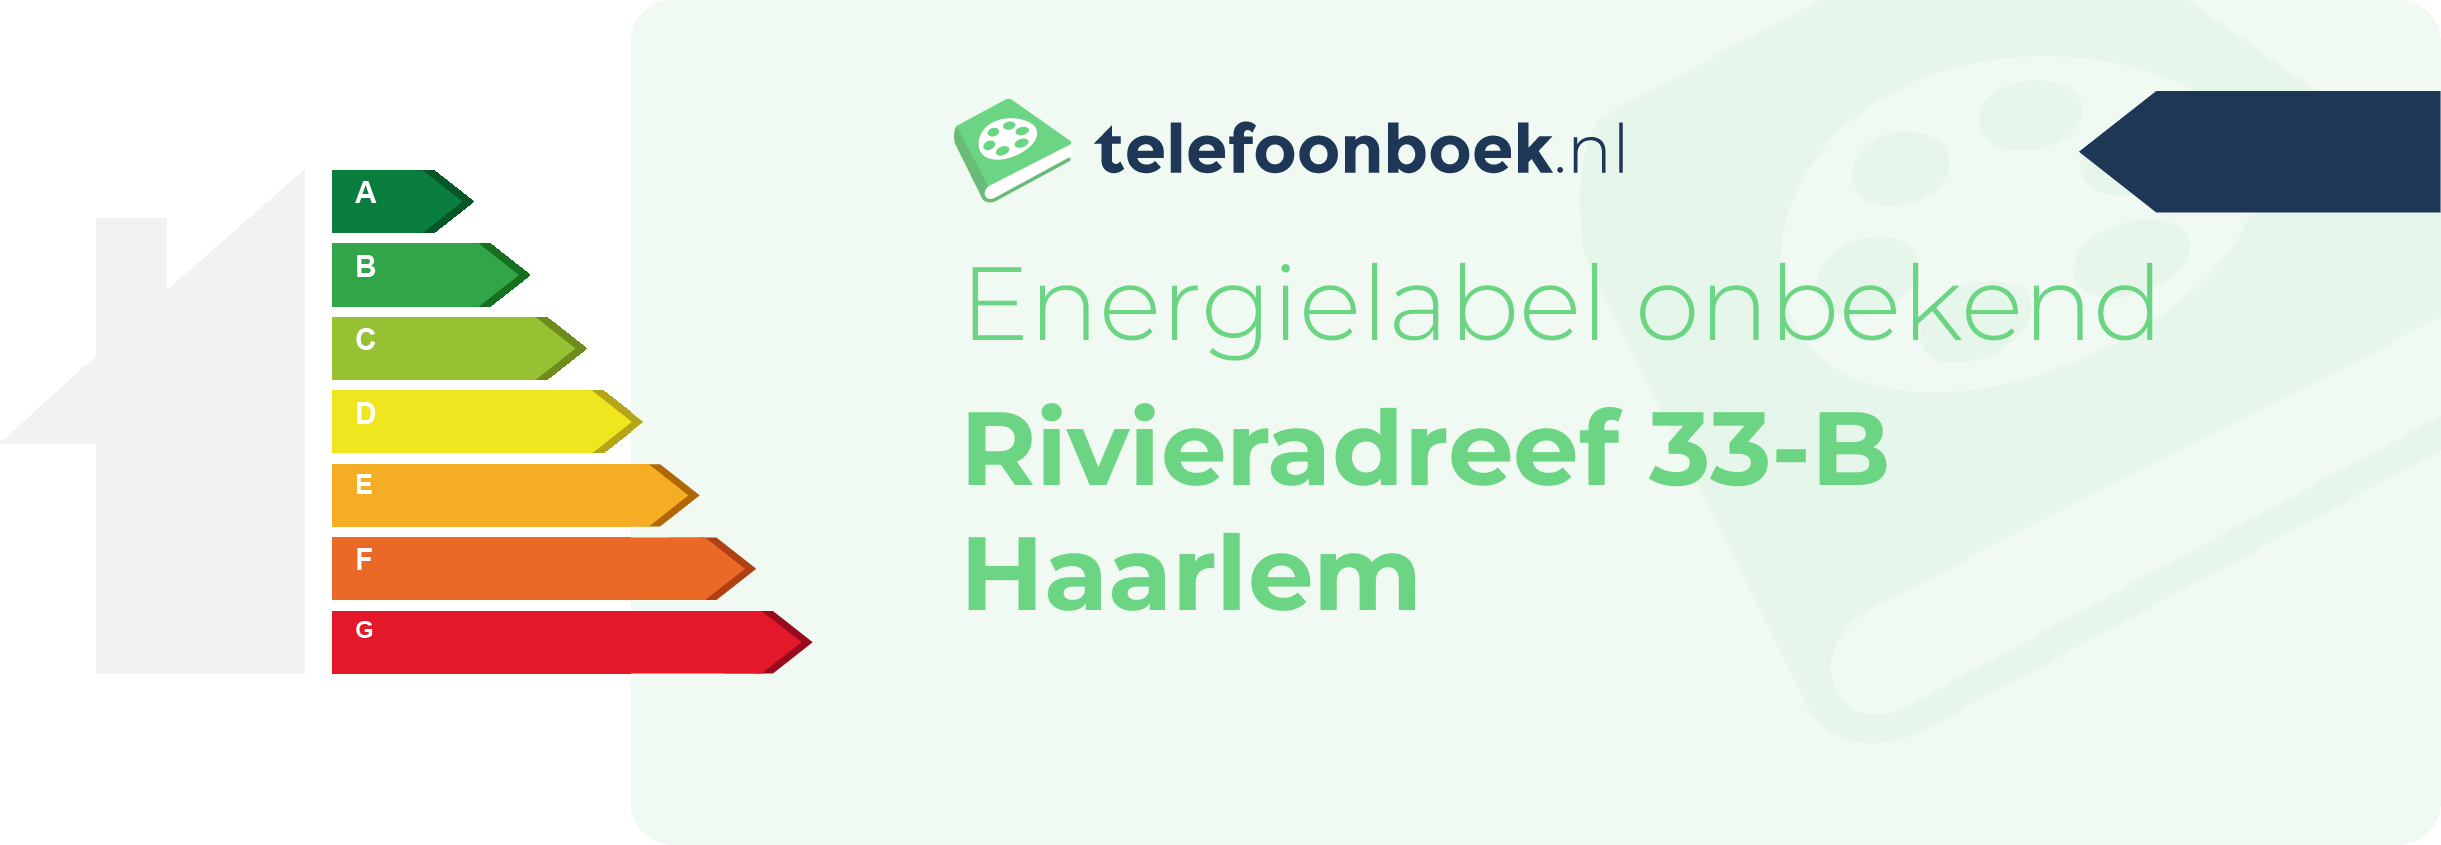 Energielabel Rivieradreef 33-B Haarlem